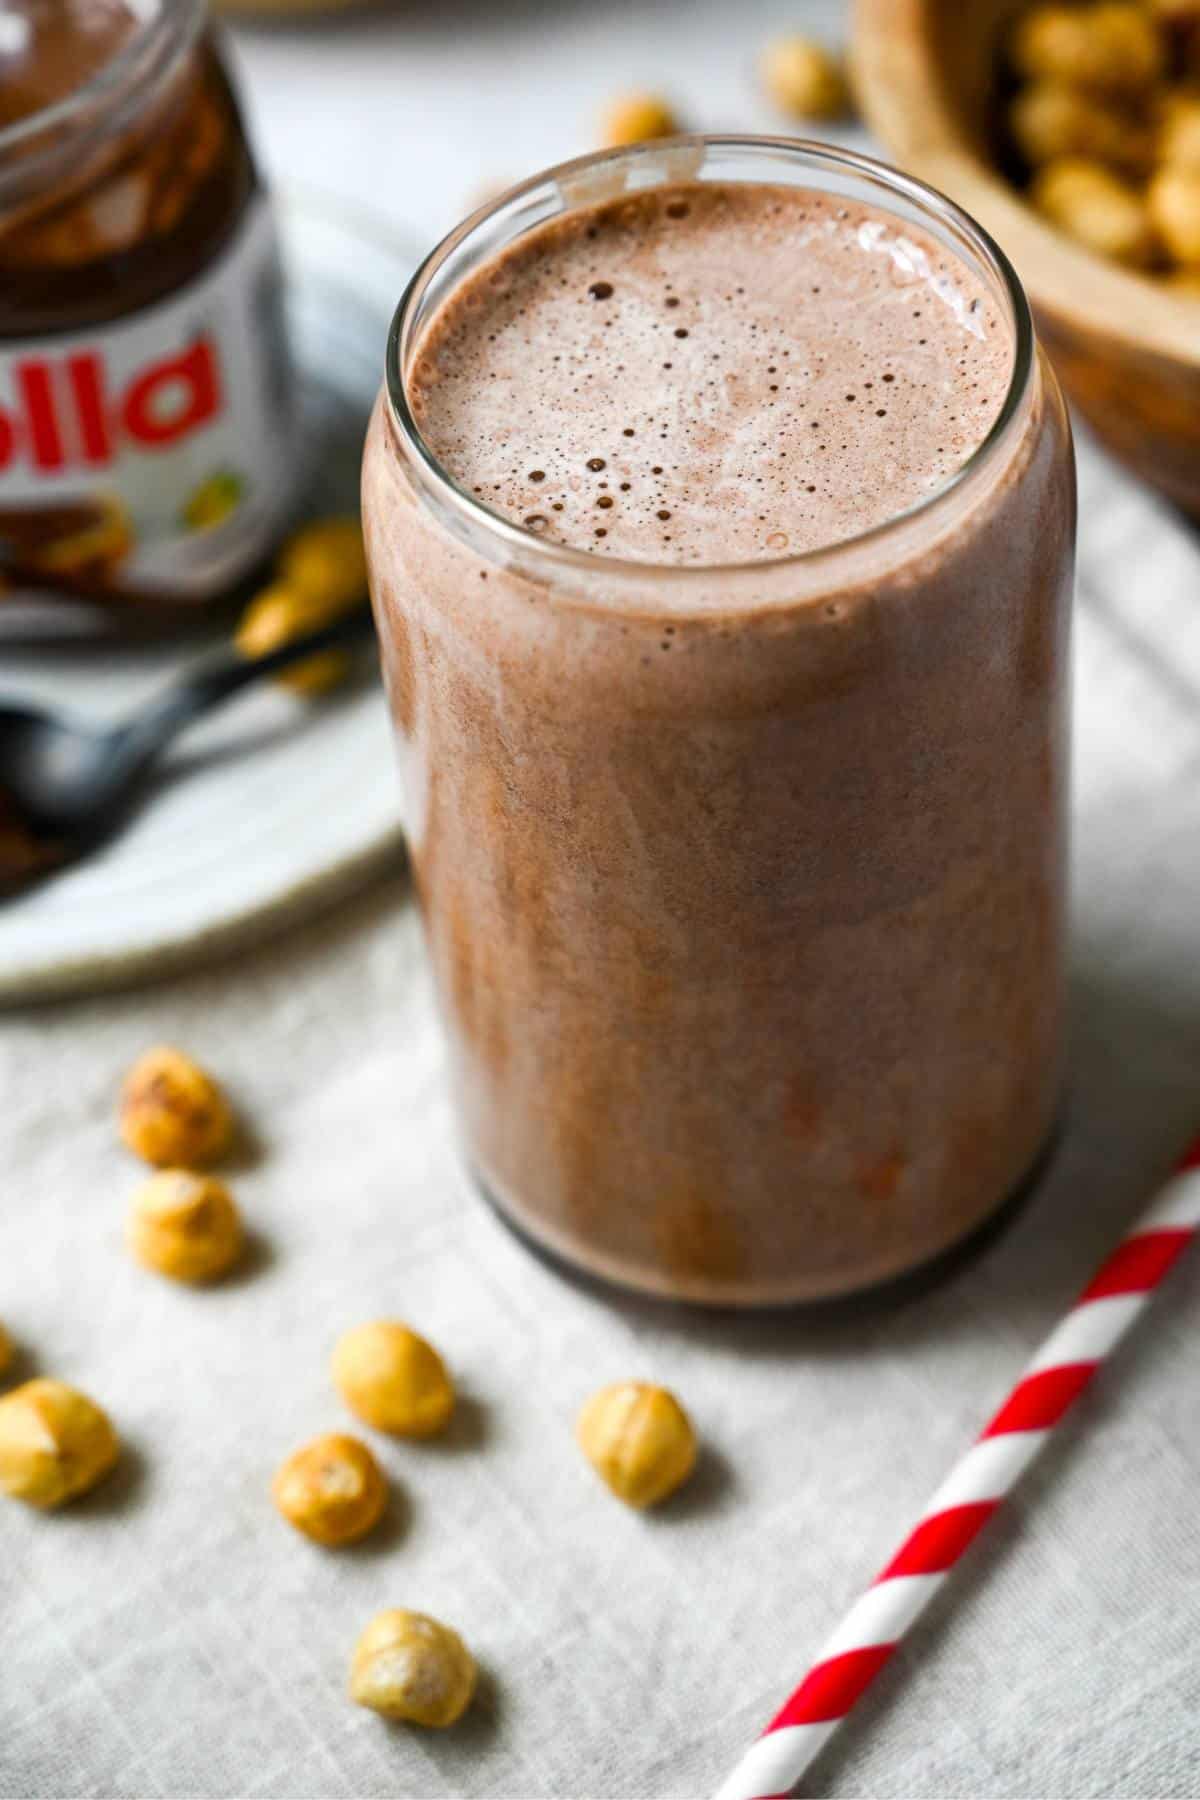 a chocolate hazelnut shake in a glass with hazelnuts and a straw next to it